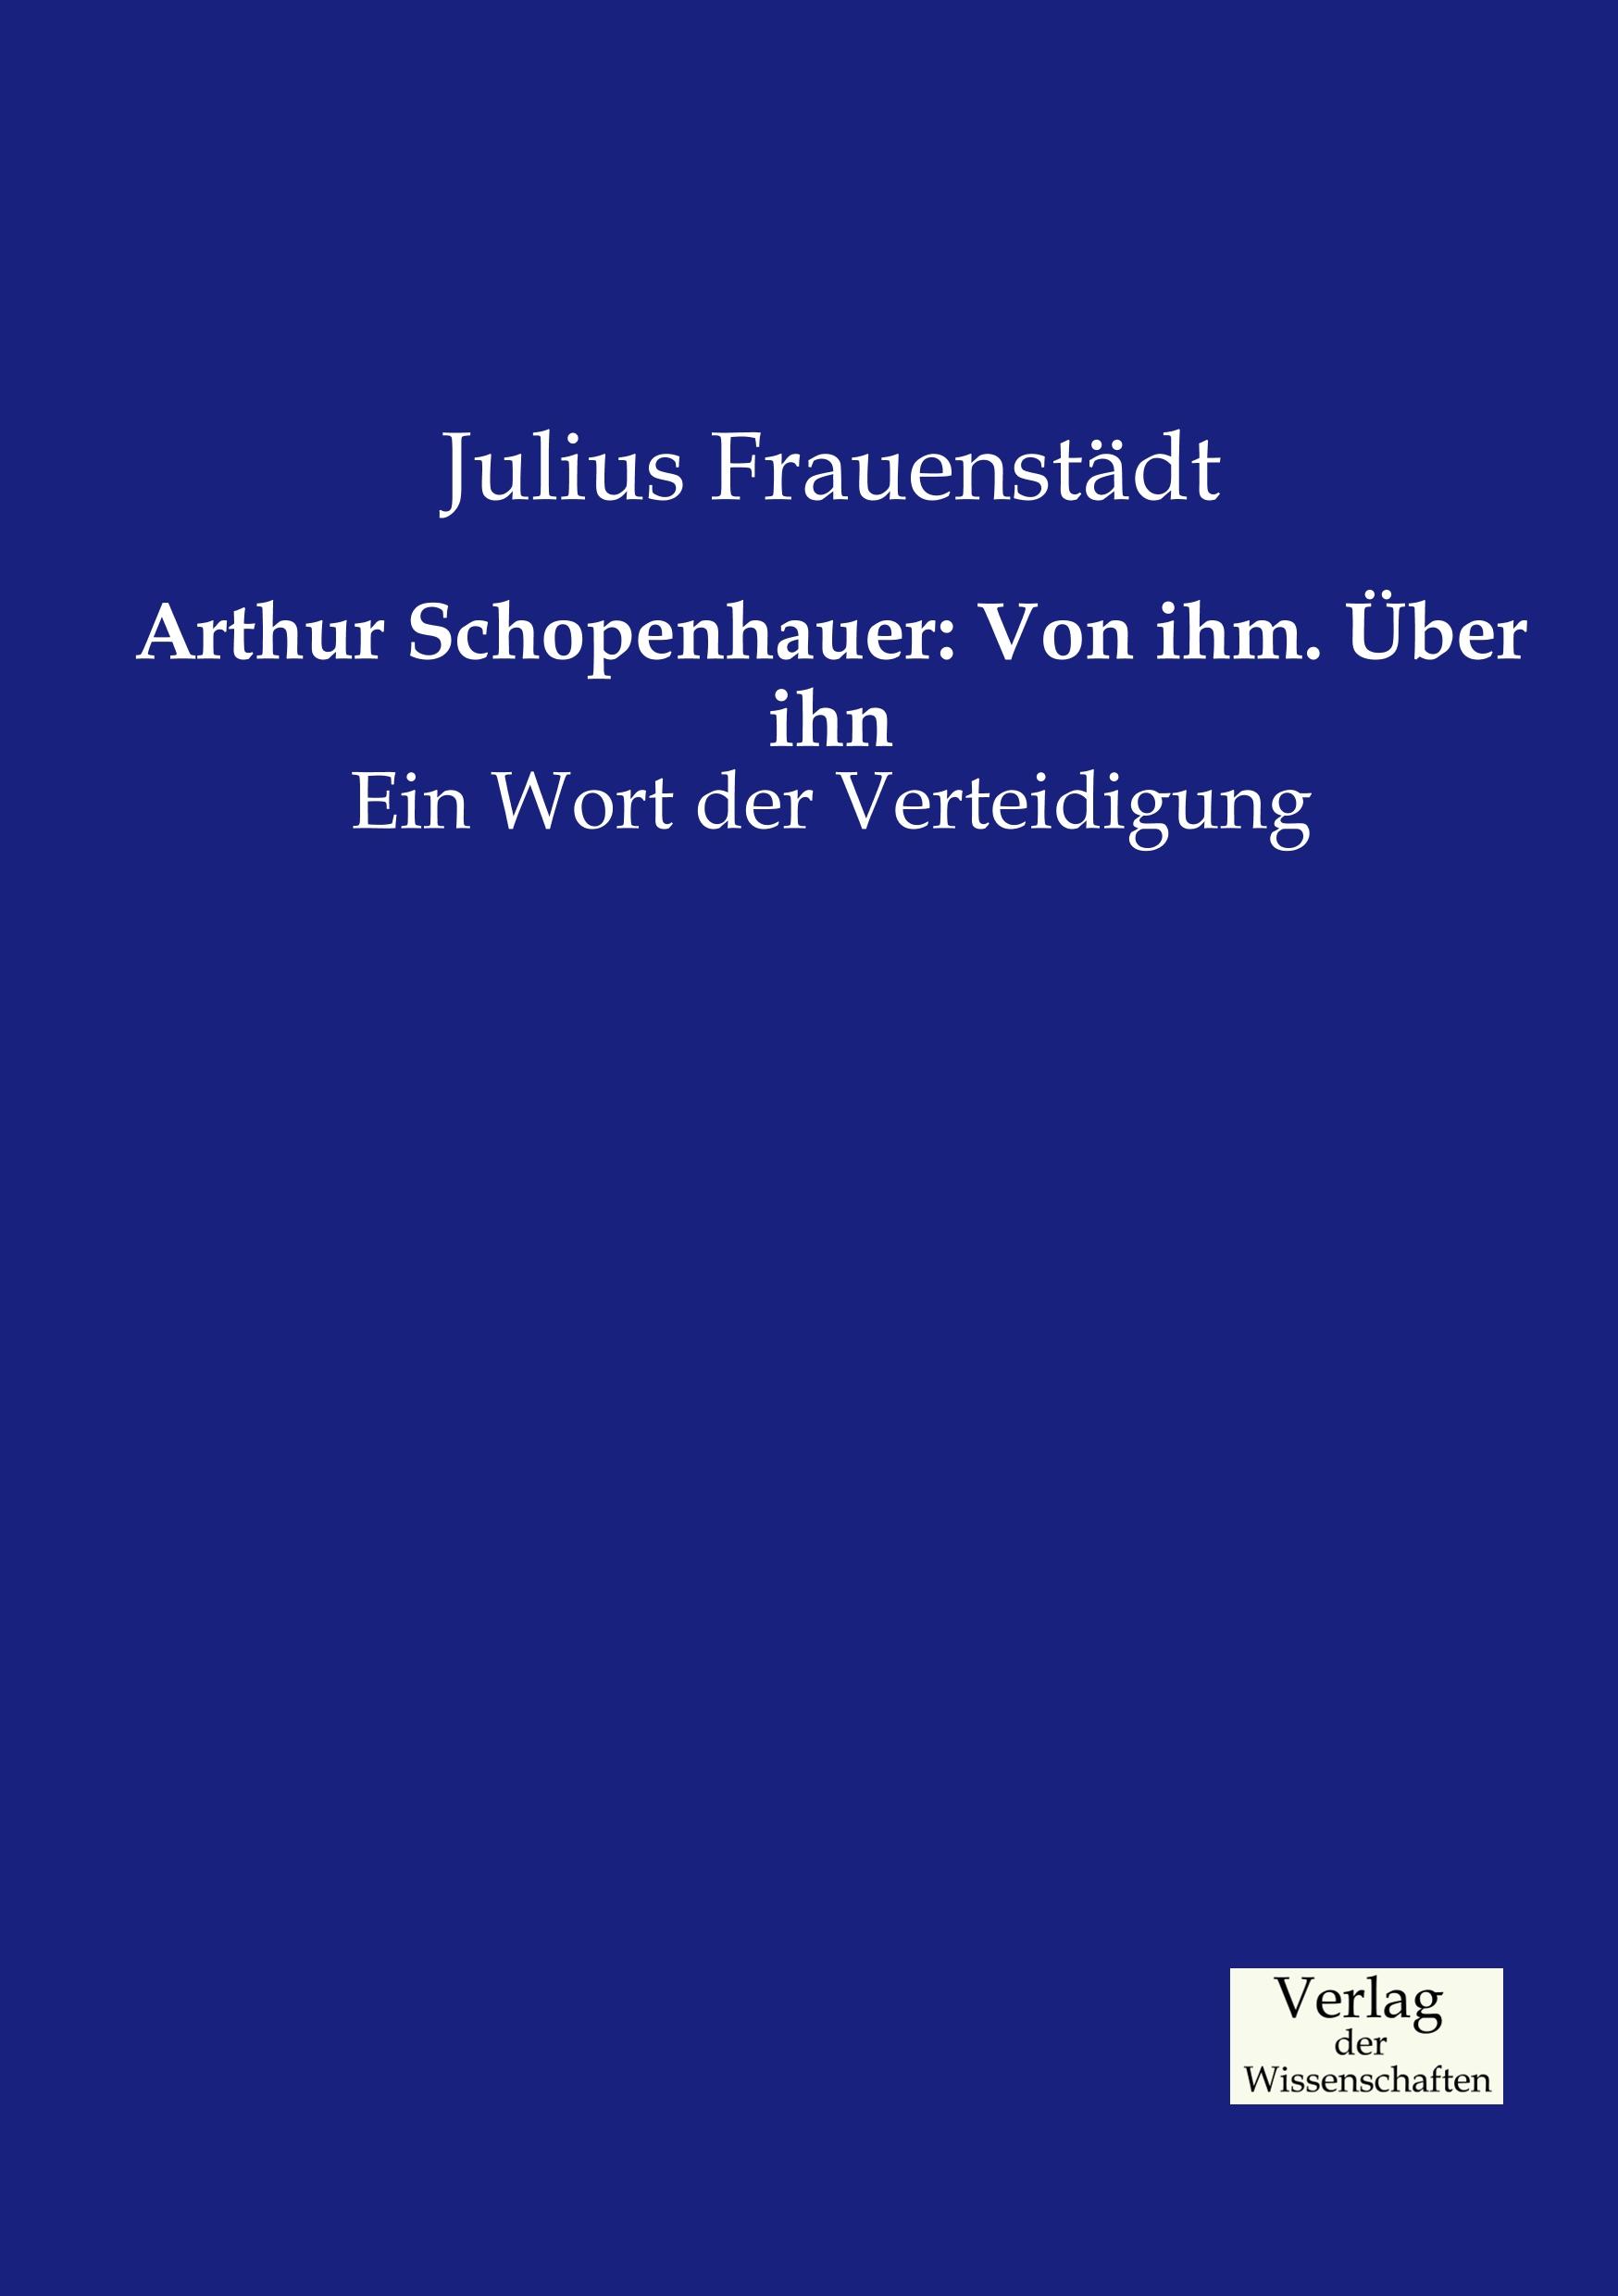 Arthur Schopenhauer: Von ihm. Über ihn / Ein Wort der Verteidigung / Julius Frauenstädt / Taschenbuch / Paperback / 776 S. / Deutsch / 2019 / Vero Verlag / EAN 9783957004833 - Frauenstädt, Julius